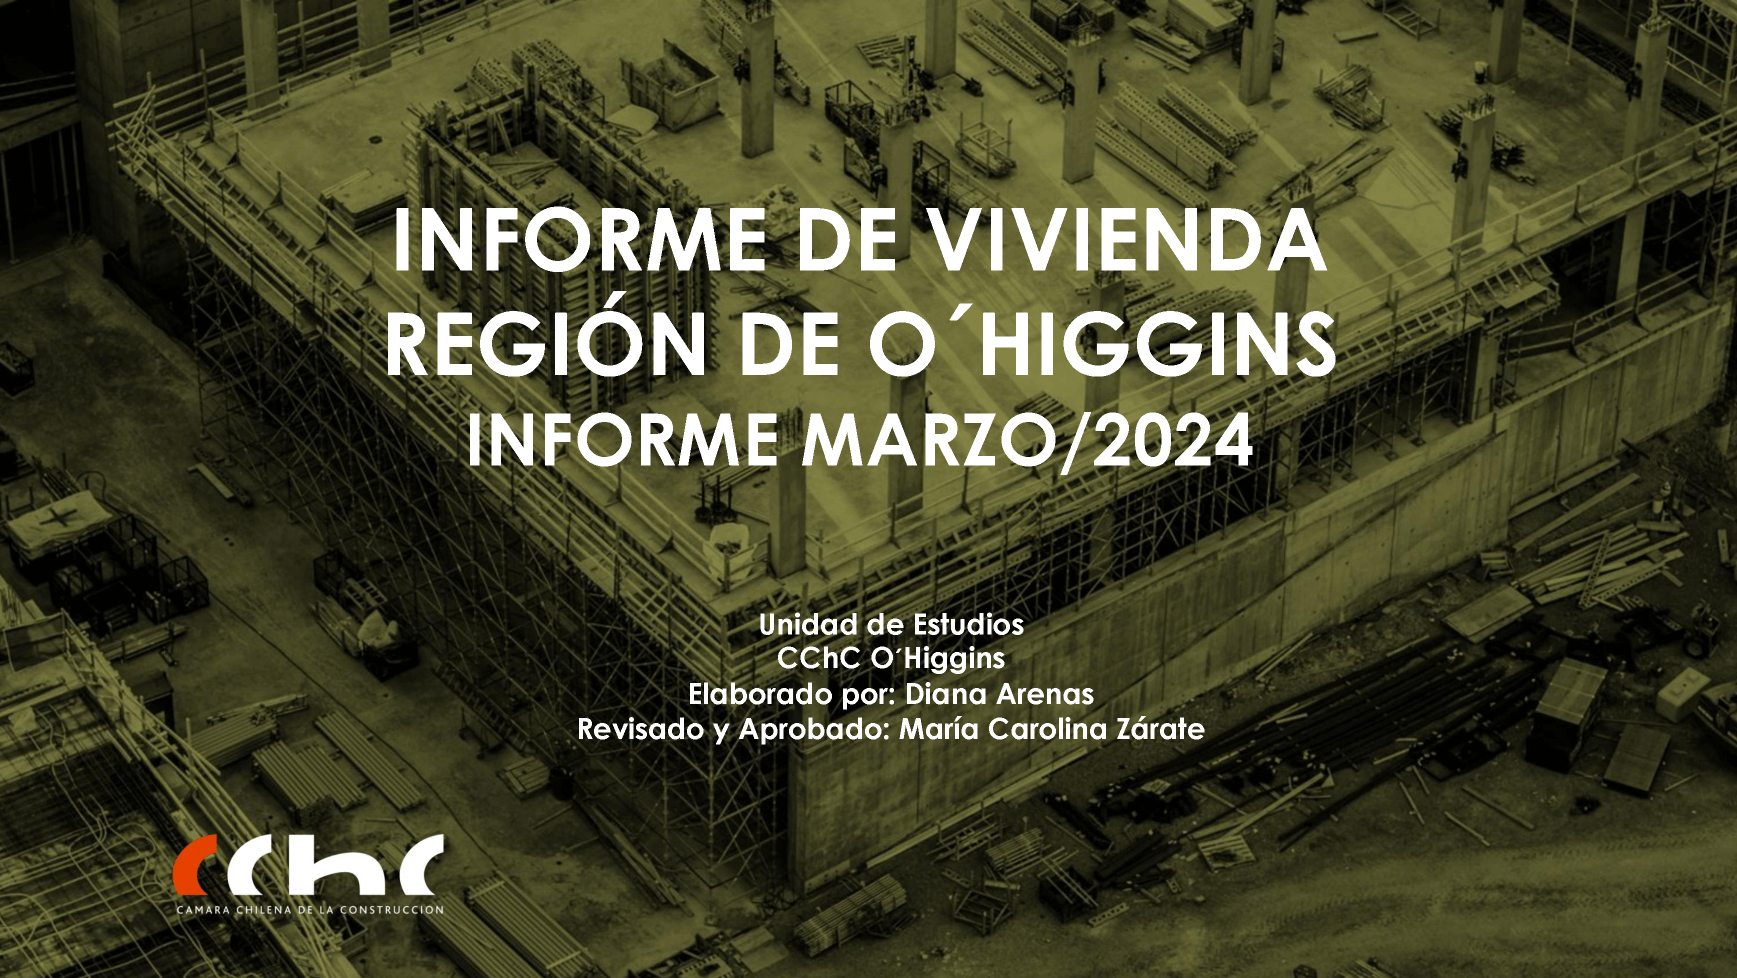 Inform-de-Vivienda-Region-de-OHiggins-Marzo-2024_2.png